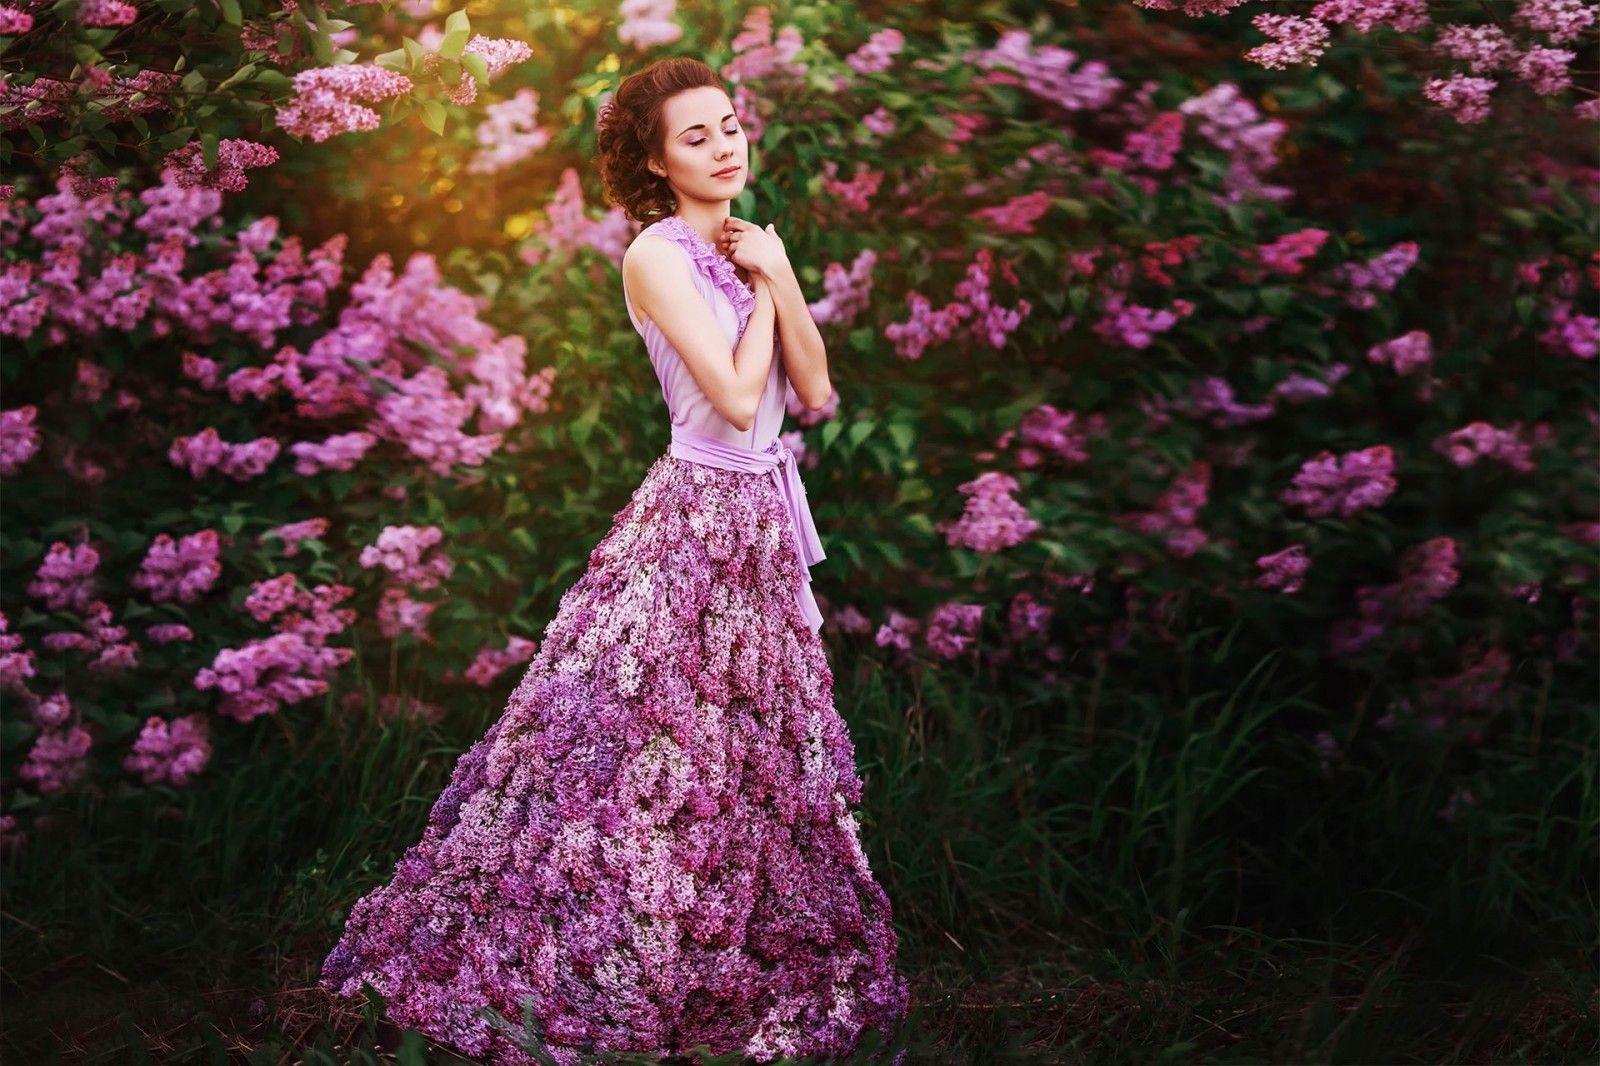 Wallpaper, women outdoors, model, flowers, purple, fashion, pink